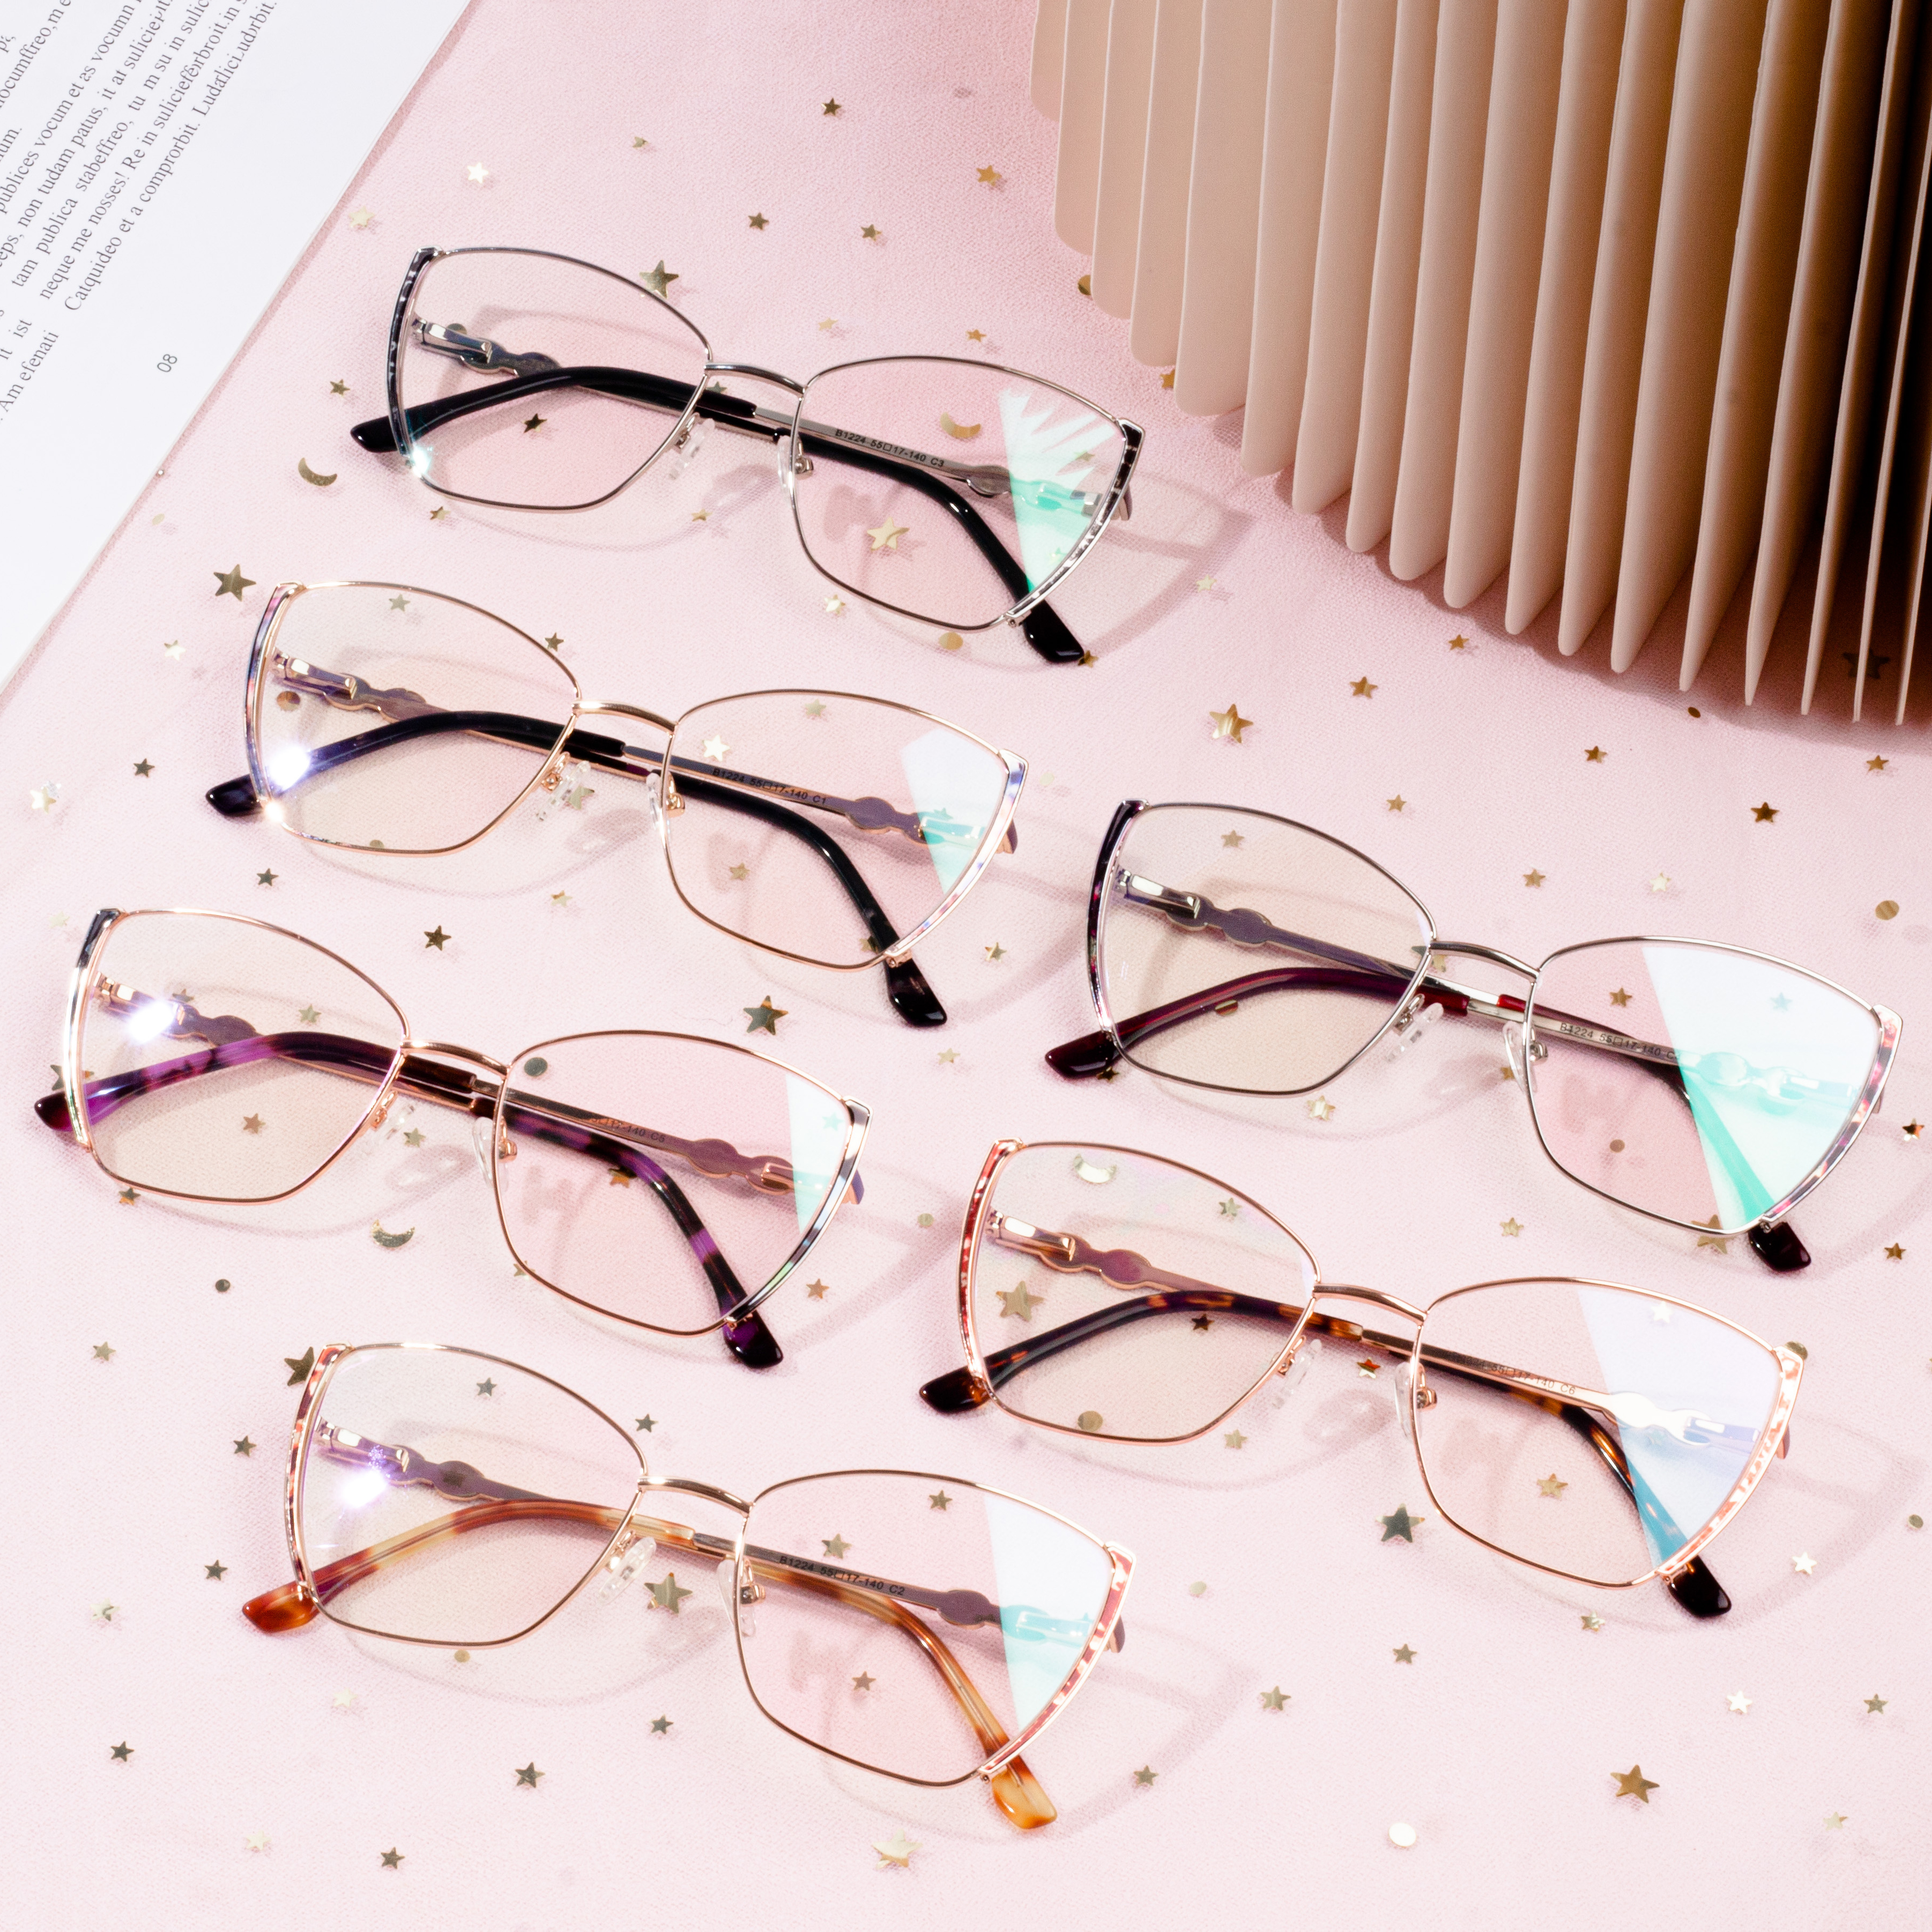 Marco de anteojos de metal de lujo gafas de moda para niña